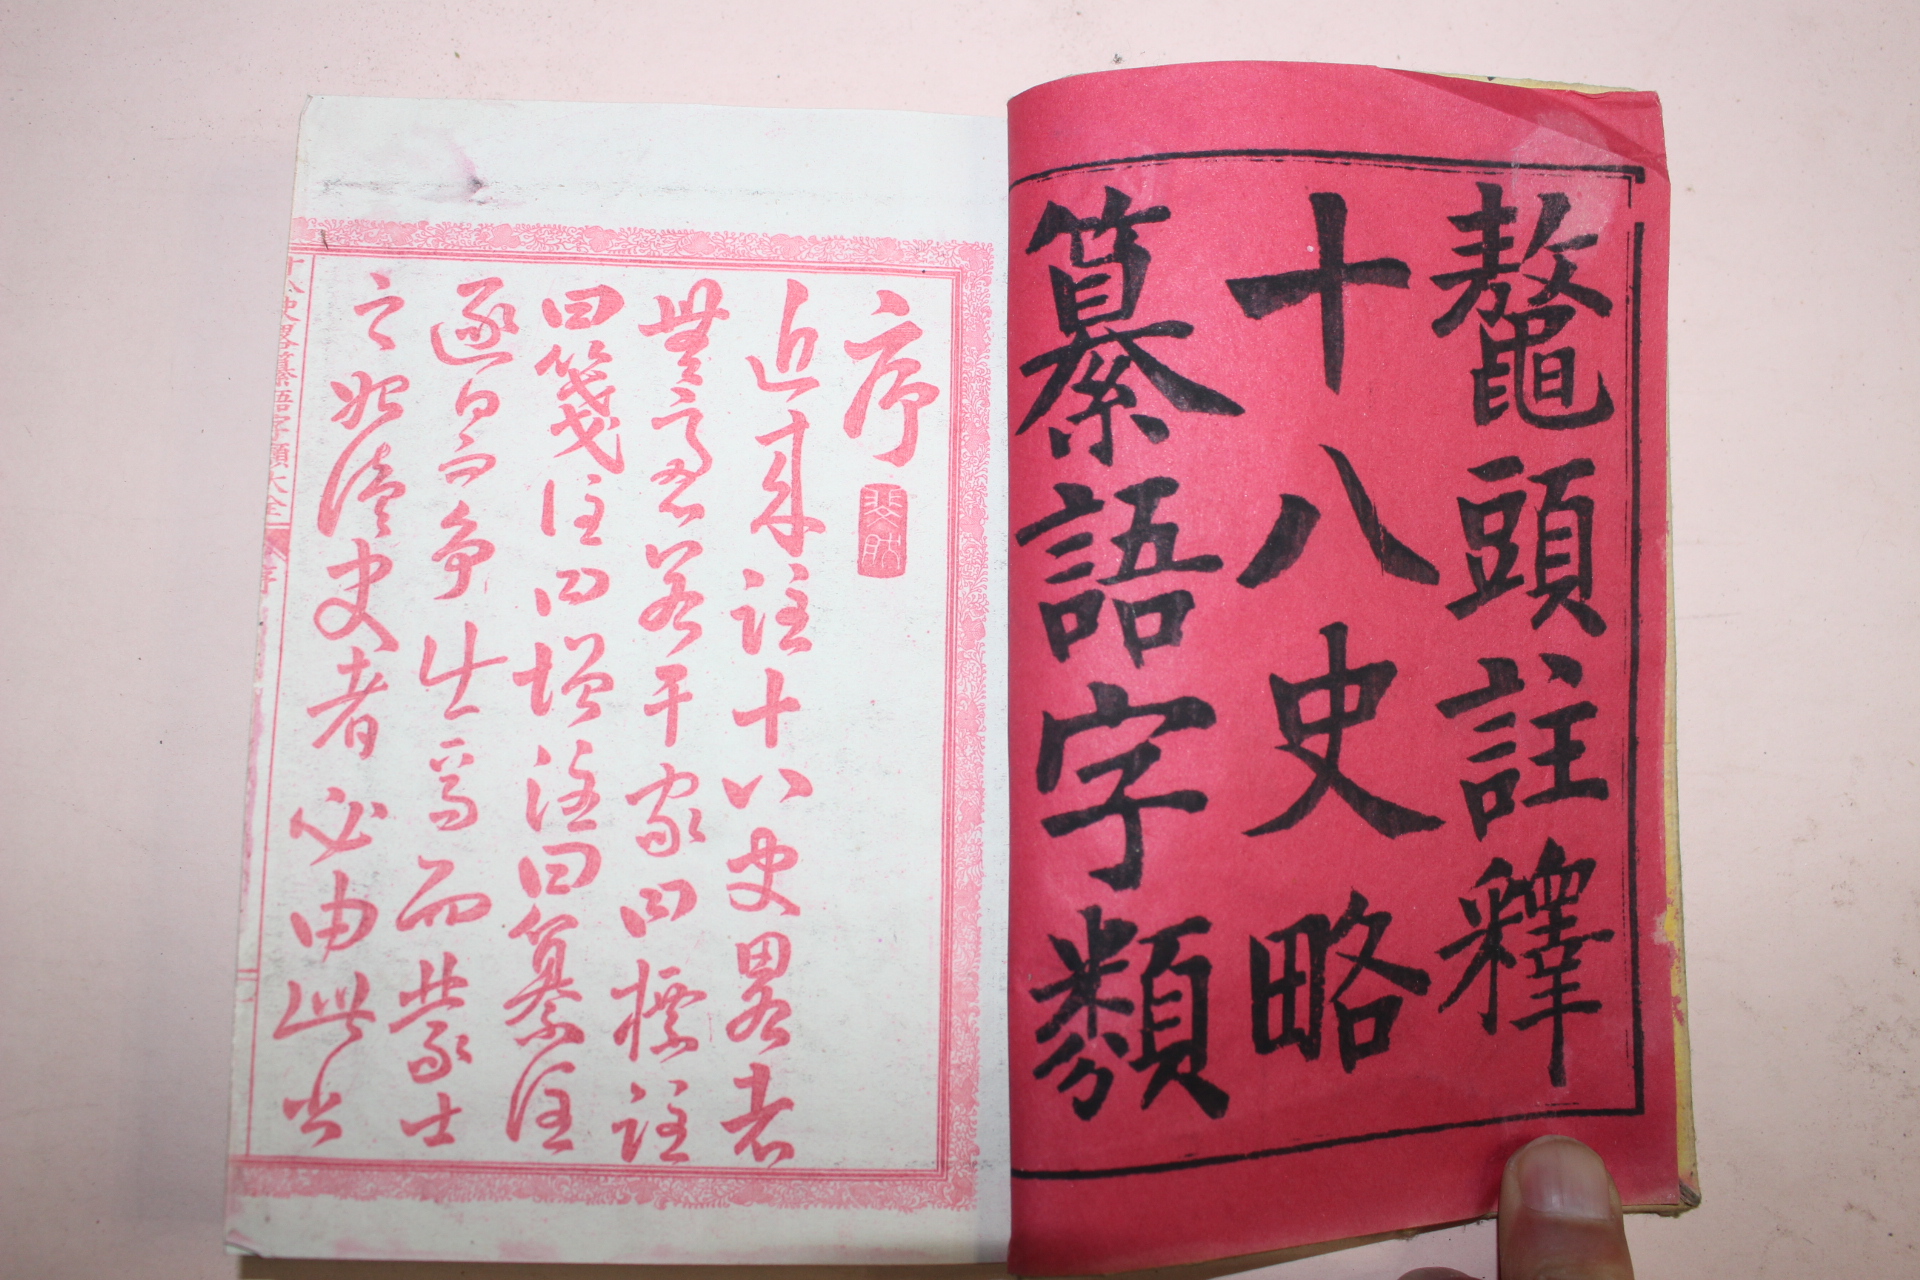 1885년(명치18년) 일본간행 오두주석십팔사략찬어자류(鼇頭註釋十八史略纂語字類) 3책완질